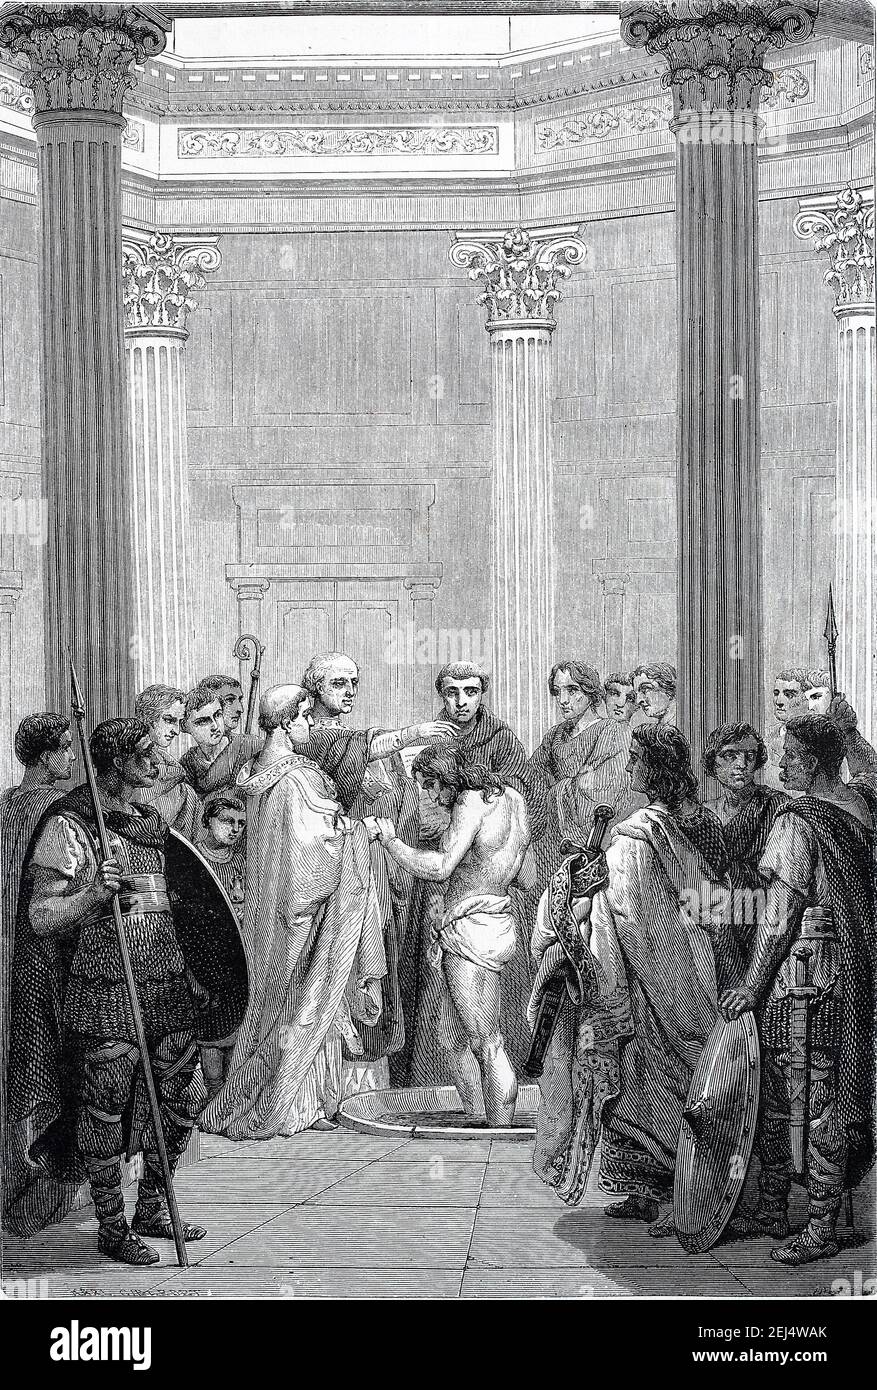 Clodowig, Taufe von Clovis, 466-511, der erste König der Franken, der alle fränkischen Stämme unter einem Herrscher vereinte, Illustration aus 1880 Stockfoto